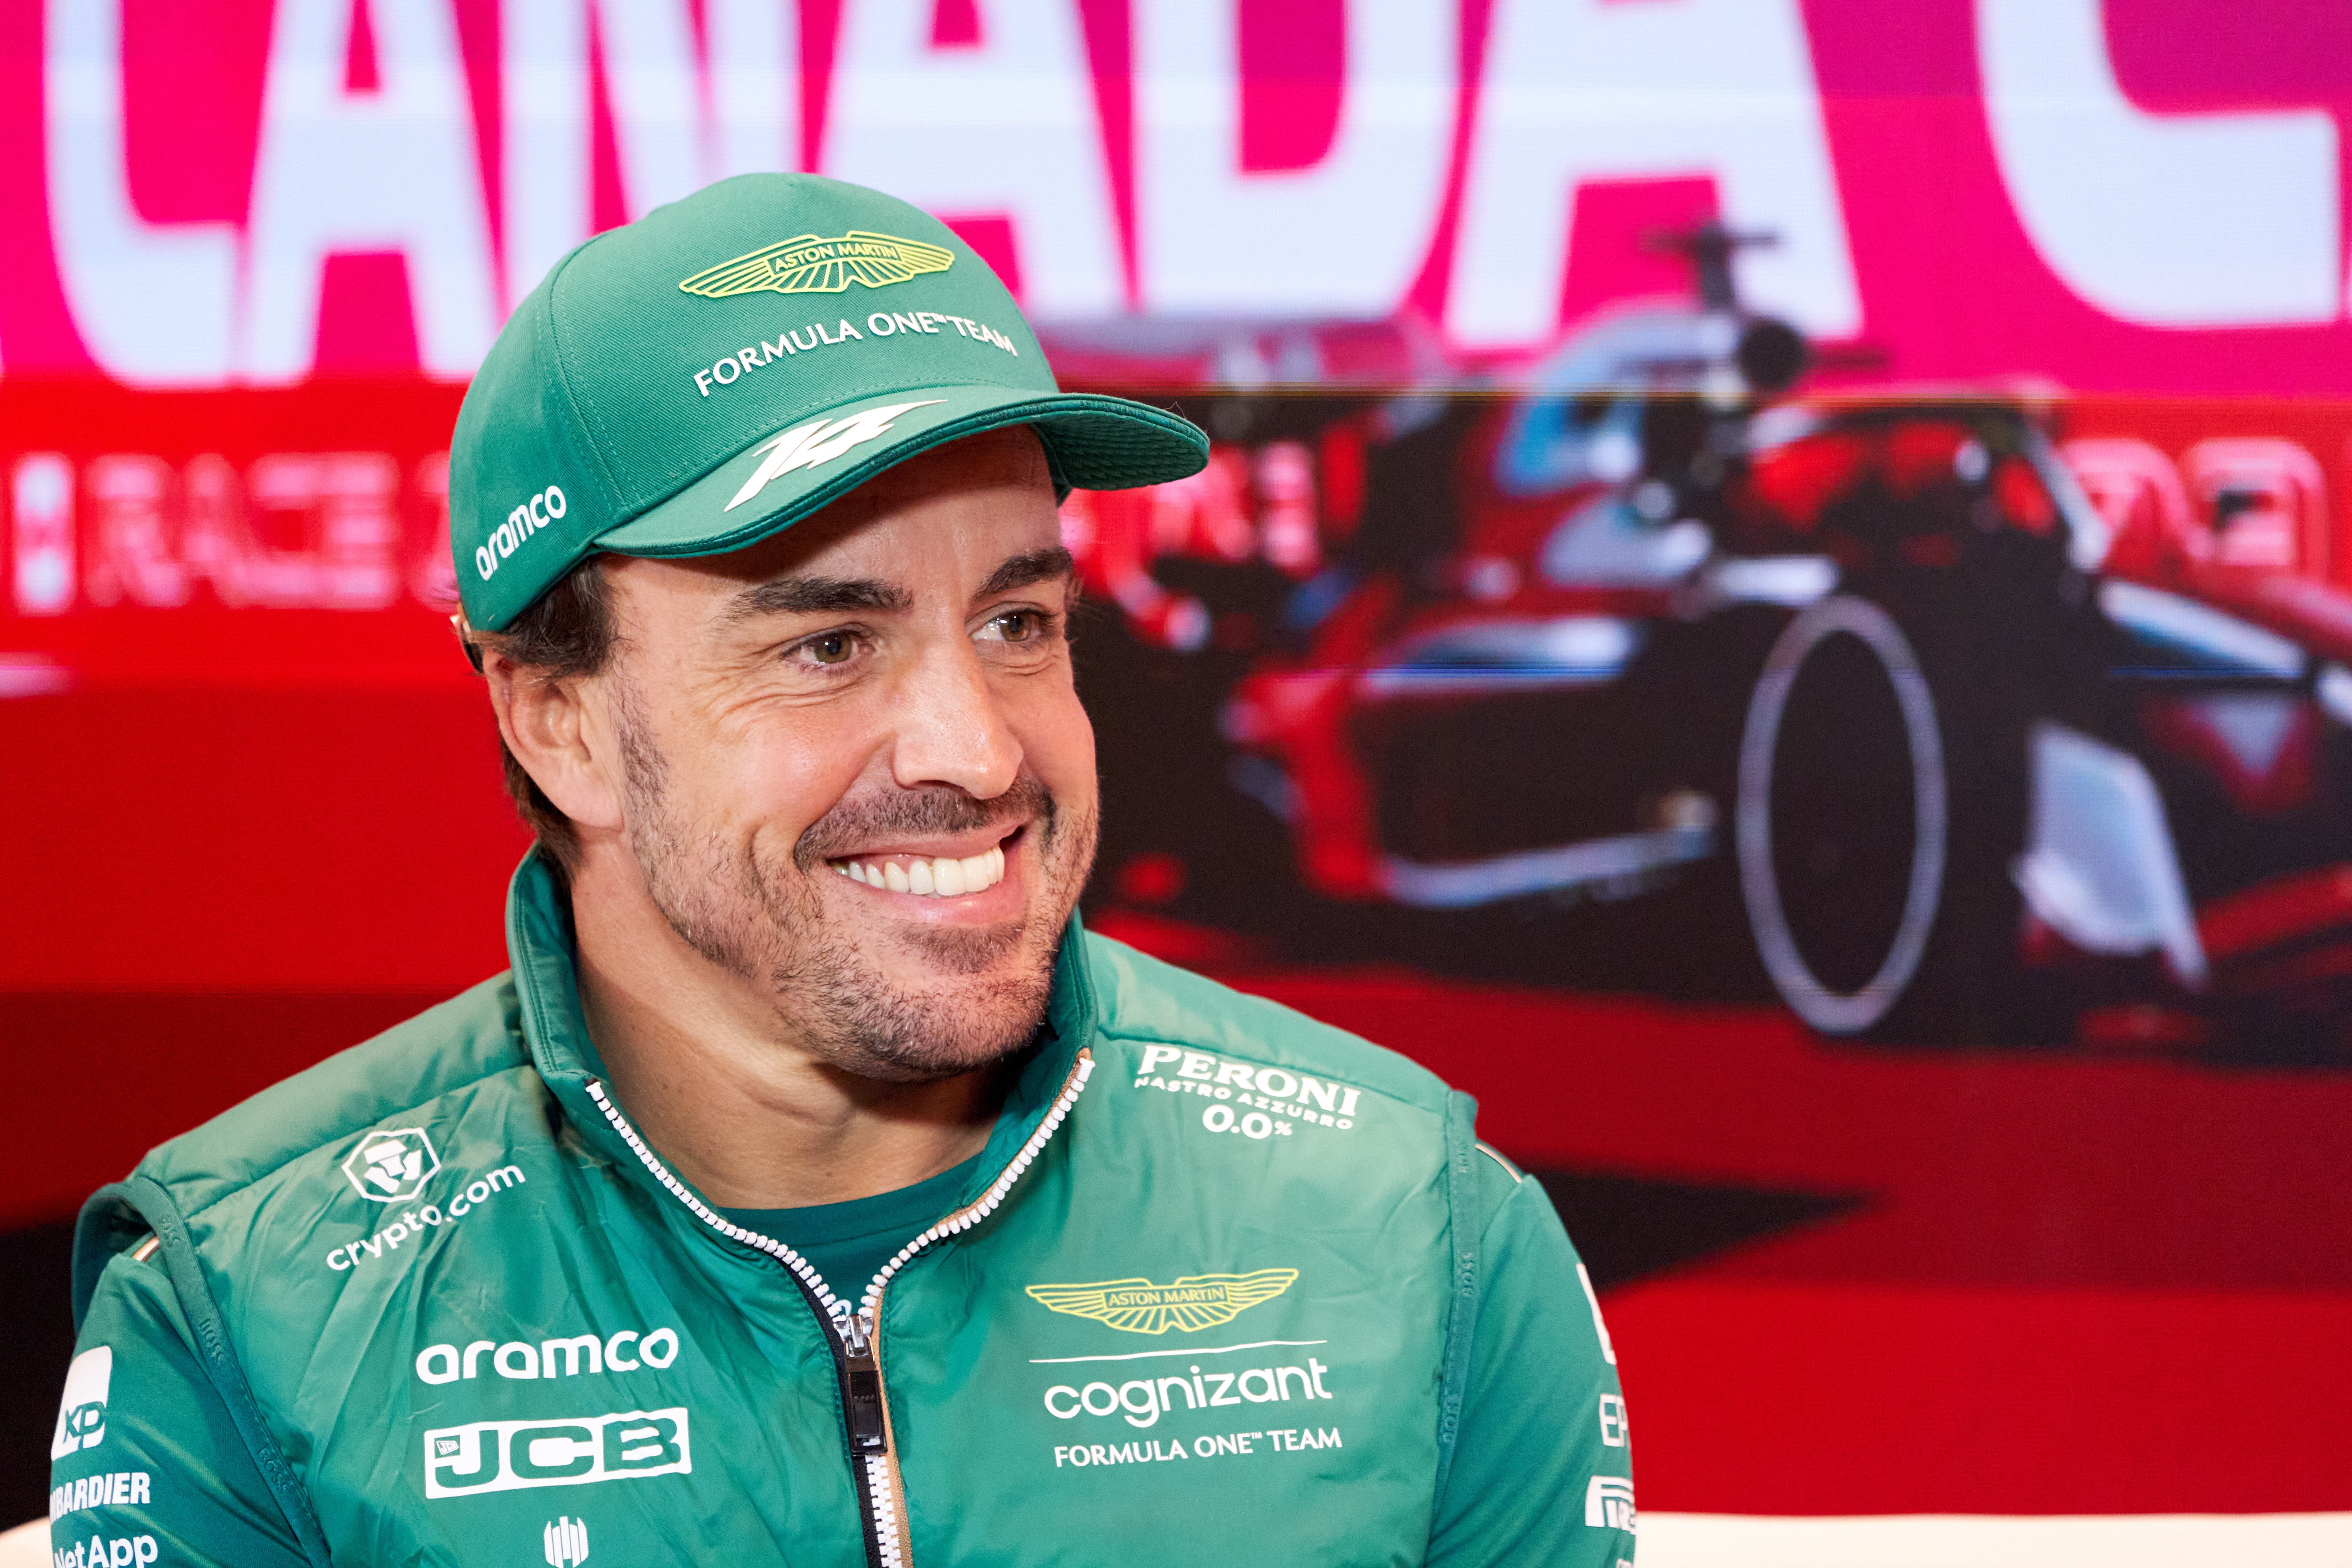 Fernando Alonso, novetat, torna al podi, la 33 a casa de Max, miracle en l'aturada